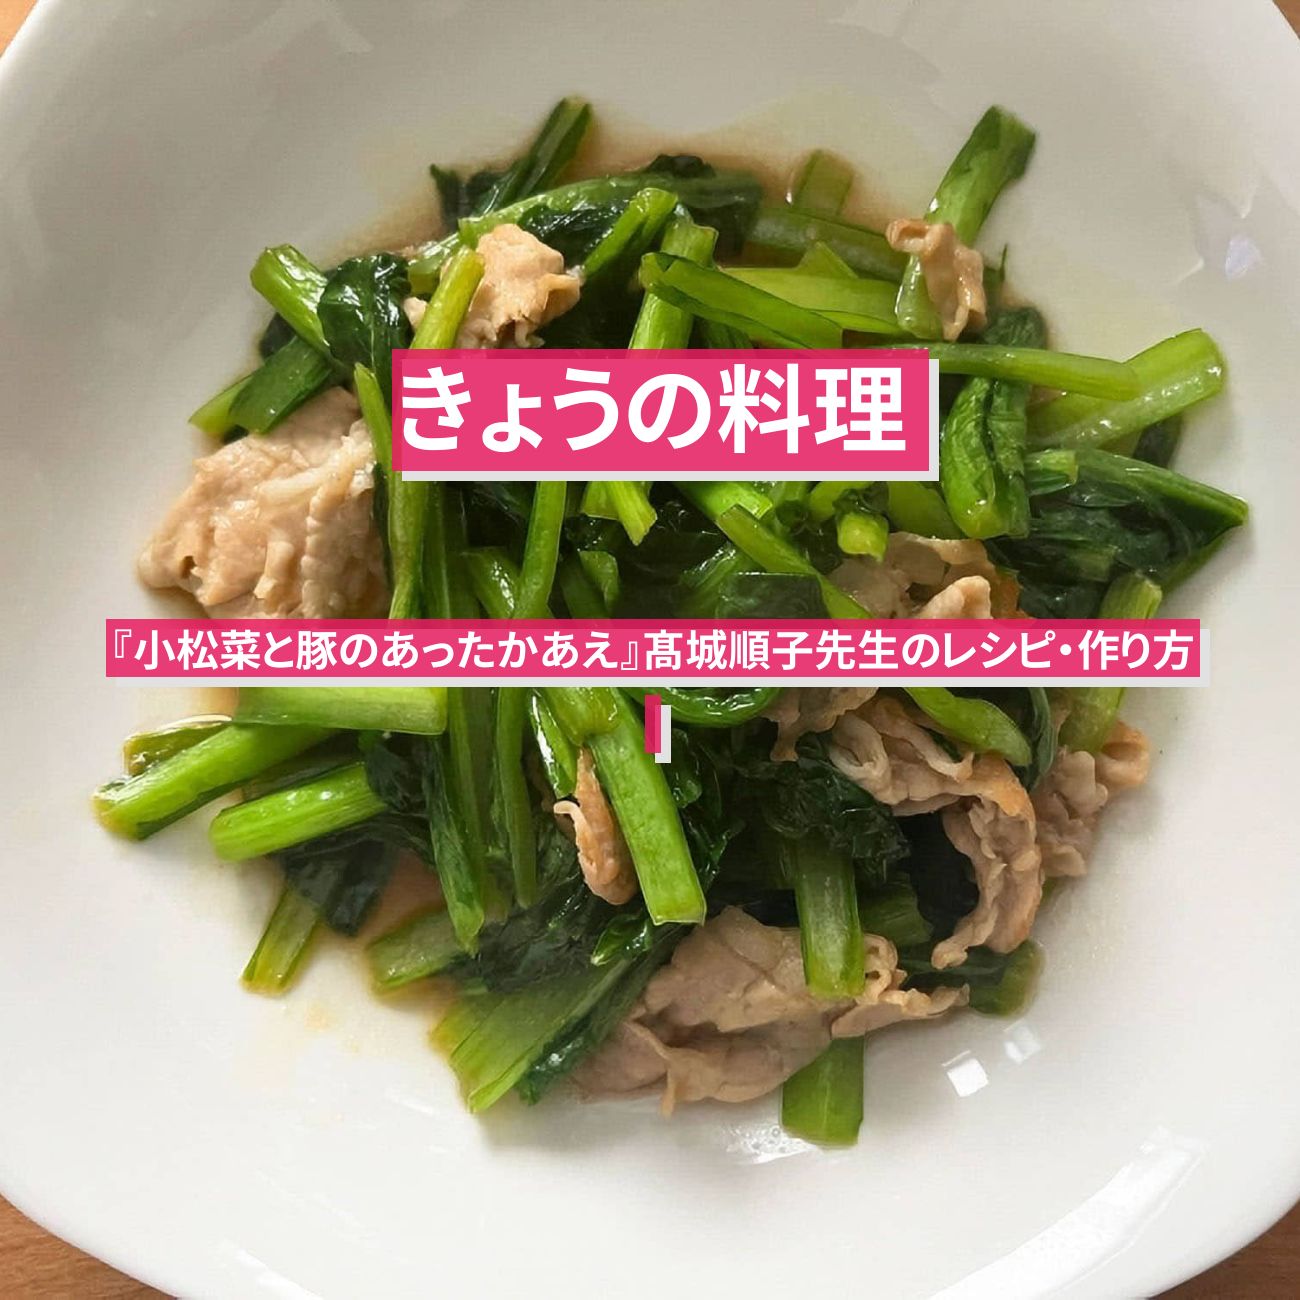 【きょうの料理】『小松菜と豚のあったかあえ』髙城順子先生のレシピ・作り方